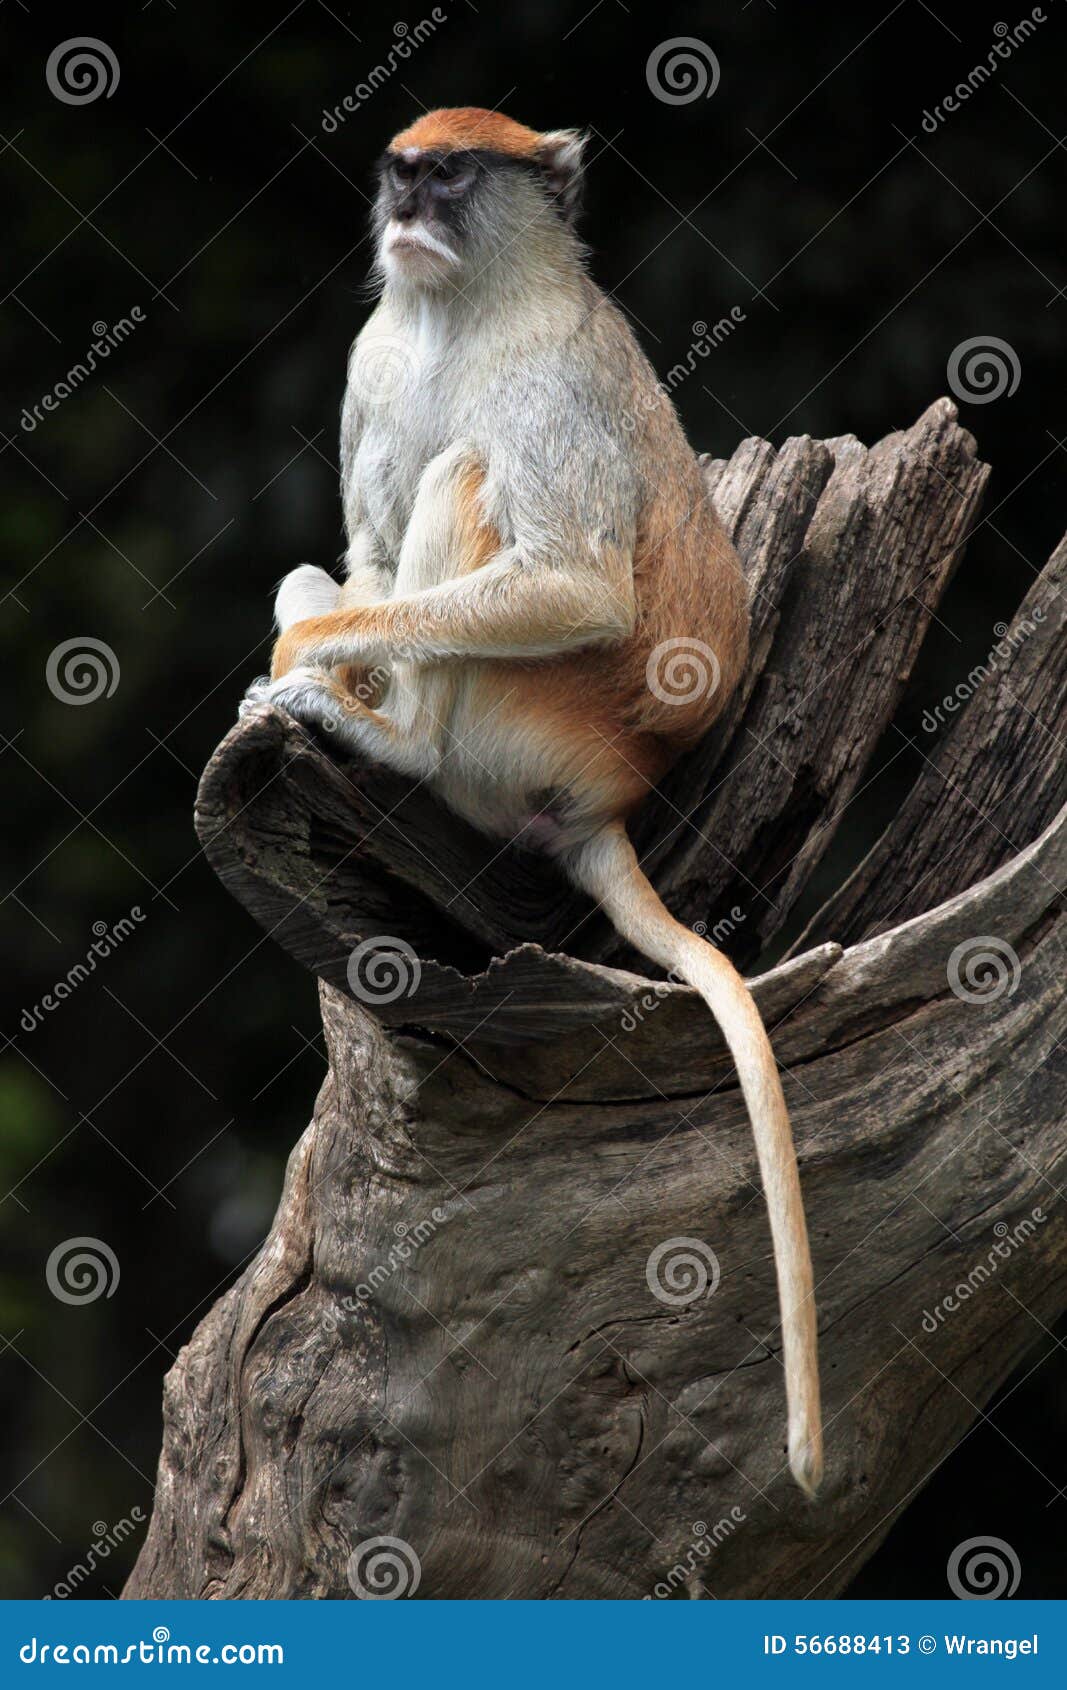 patas monkey (erythrocebus patas).